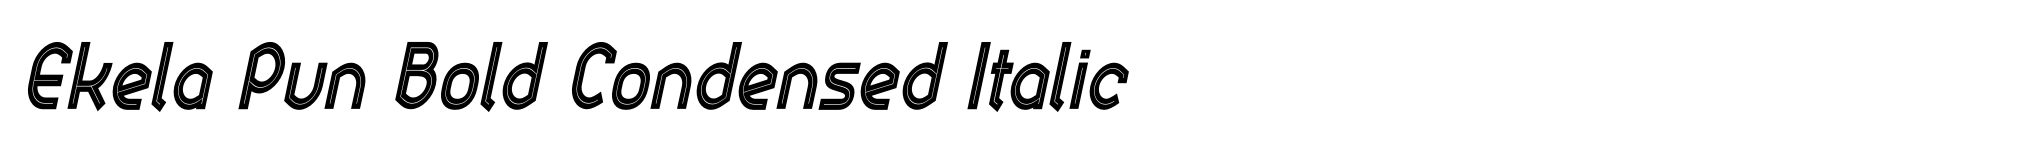 Ekela Pun Bold Condensed Italic image